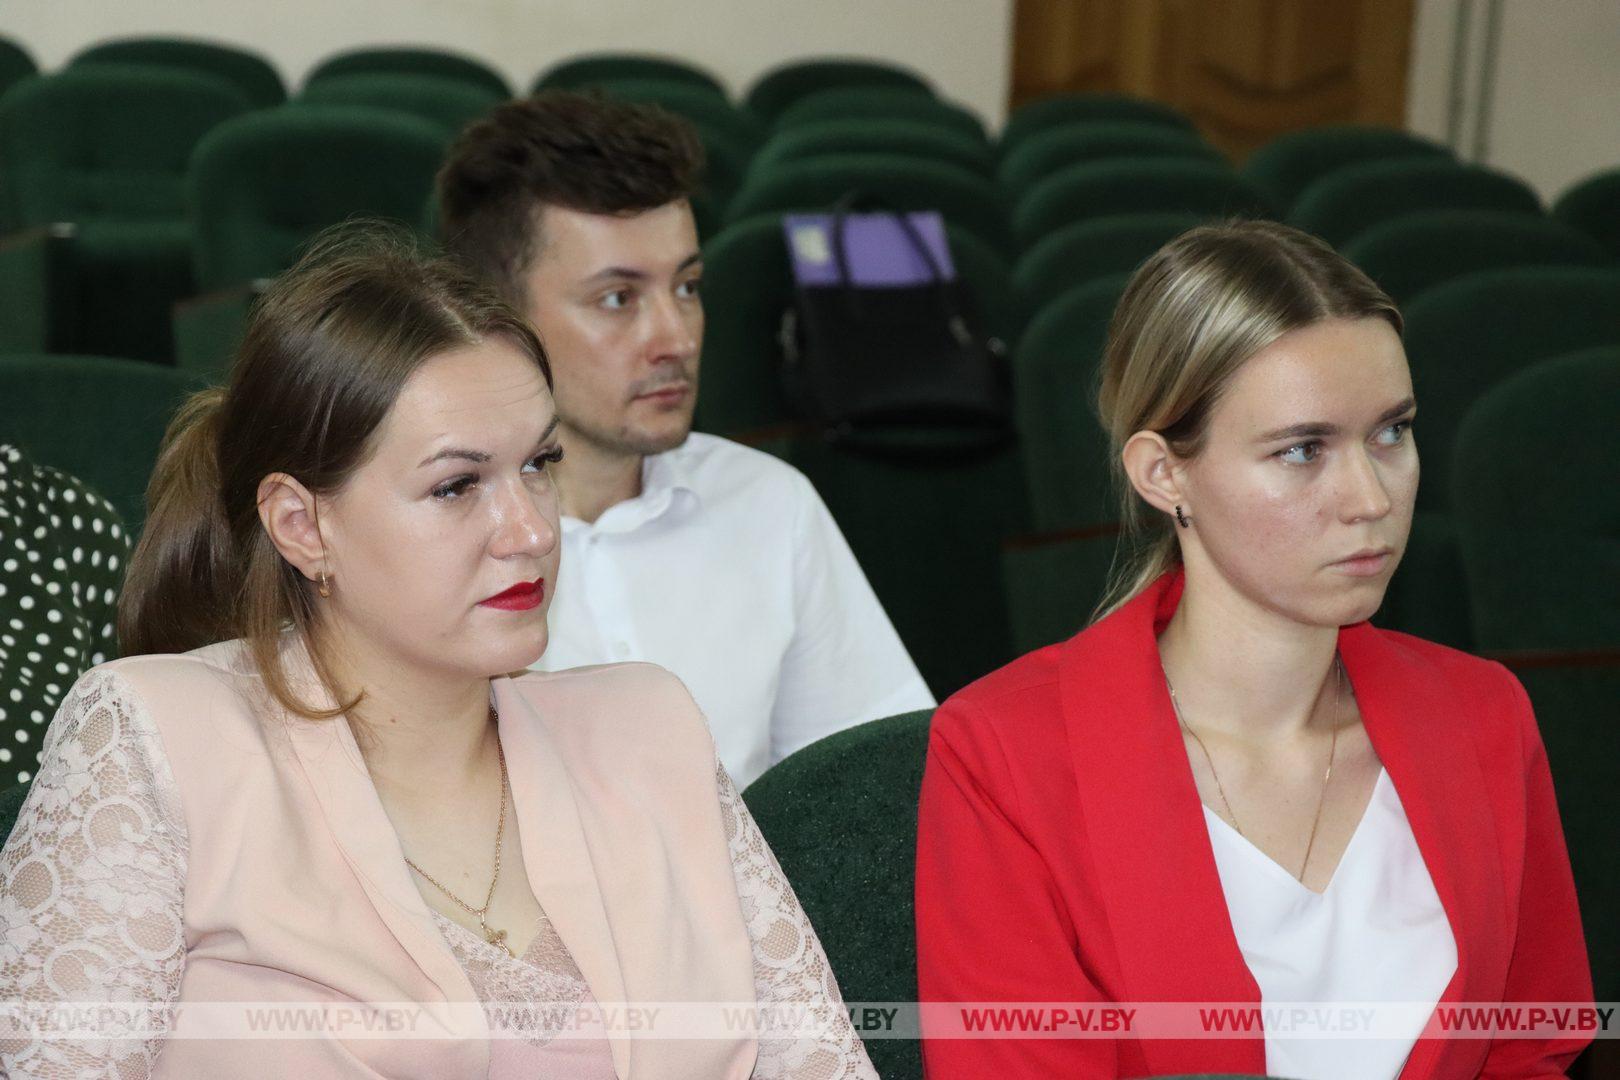 Молодые парламентарии Пинского района выступили с инициативой создания мемориального комплекса к 80-летнему юбилею Великой Победы